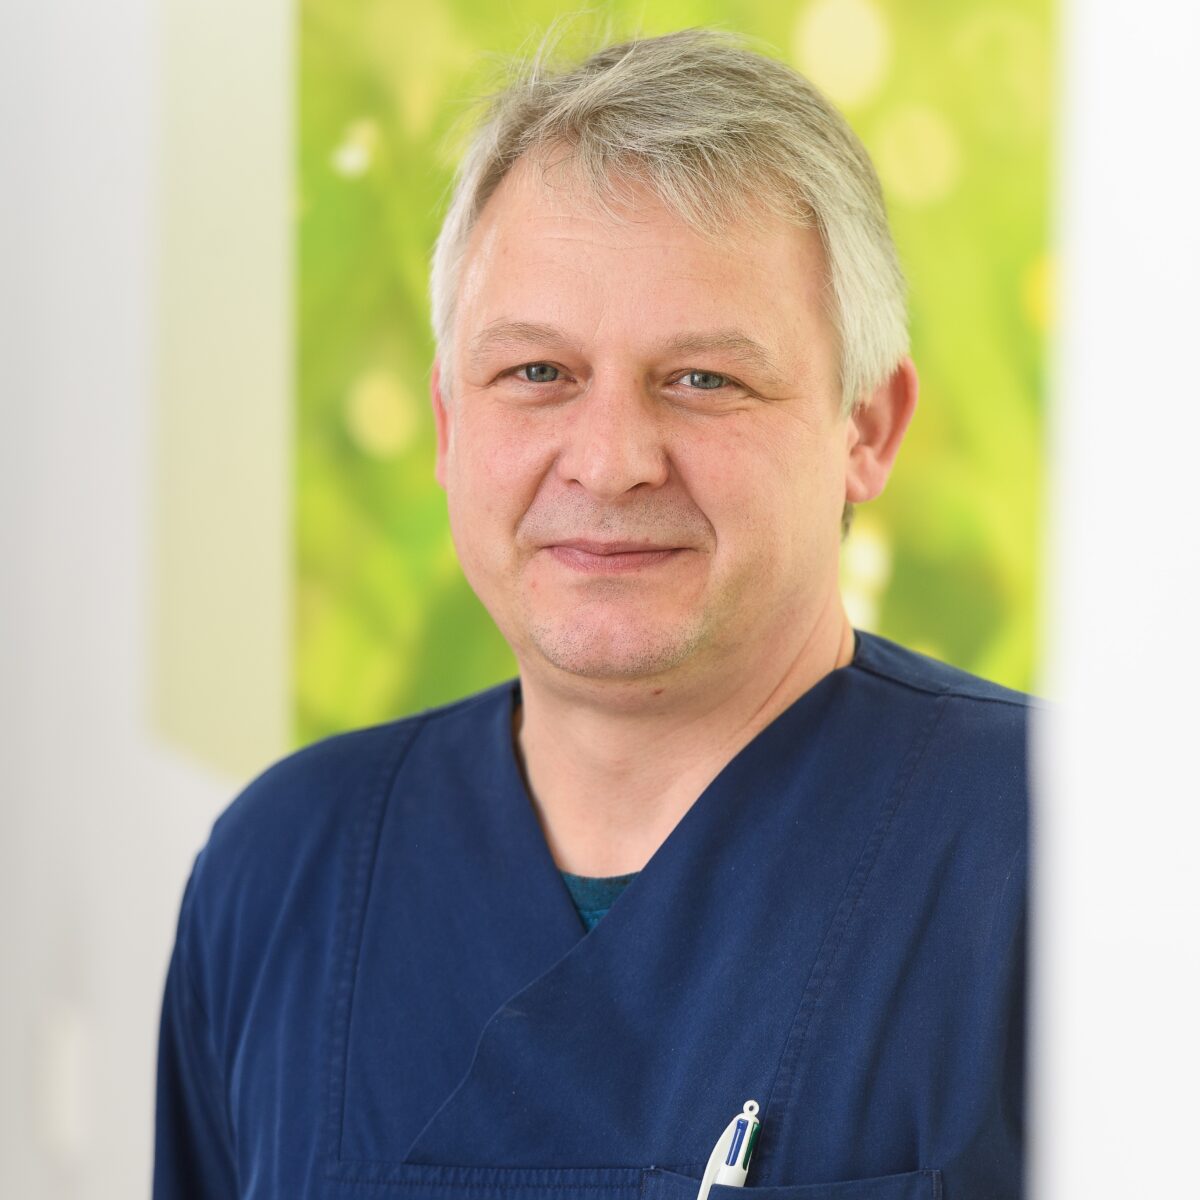 Porträt eines Mitarbeiters des Rhön Klinikums Campus Bad Neustadt